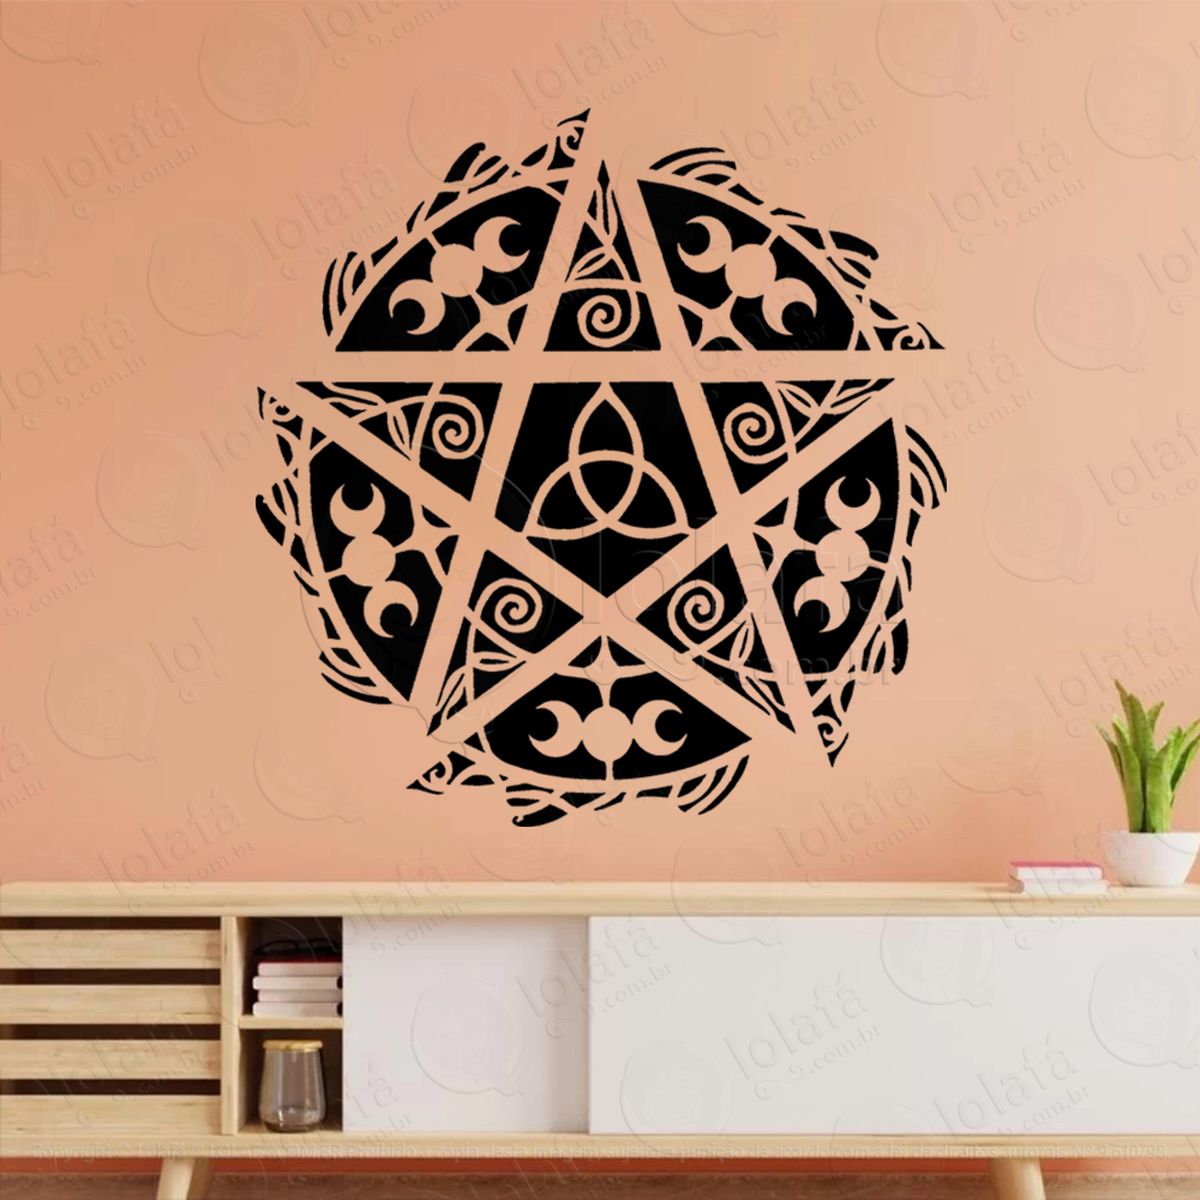 pentáculo com pentagrama triquetra e triluna adesivo de parede decorativo para casa, sala, quarto, vidro e altar ocultista - mod:73